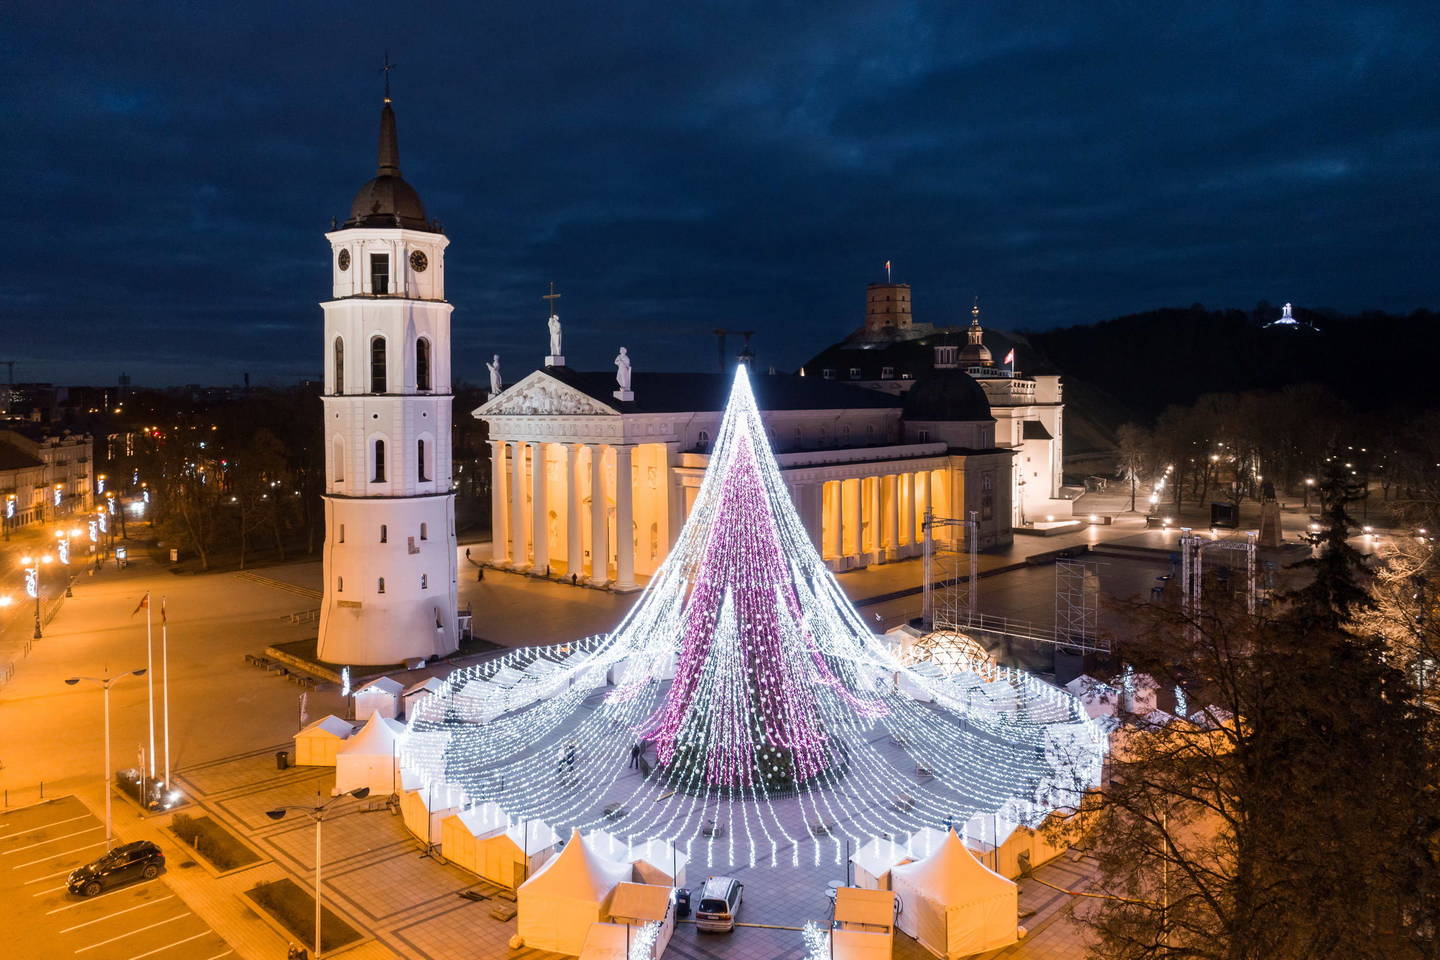  Vilniaus Kalėdų eglė susilaukė labai daug teigiamo dėmesio užsienyje.<br> S.Žiūros nuotr.